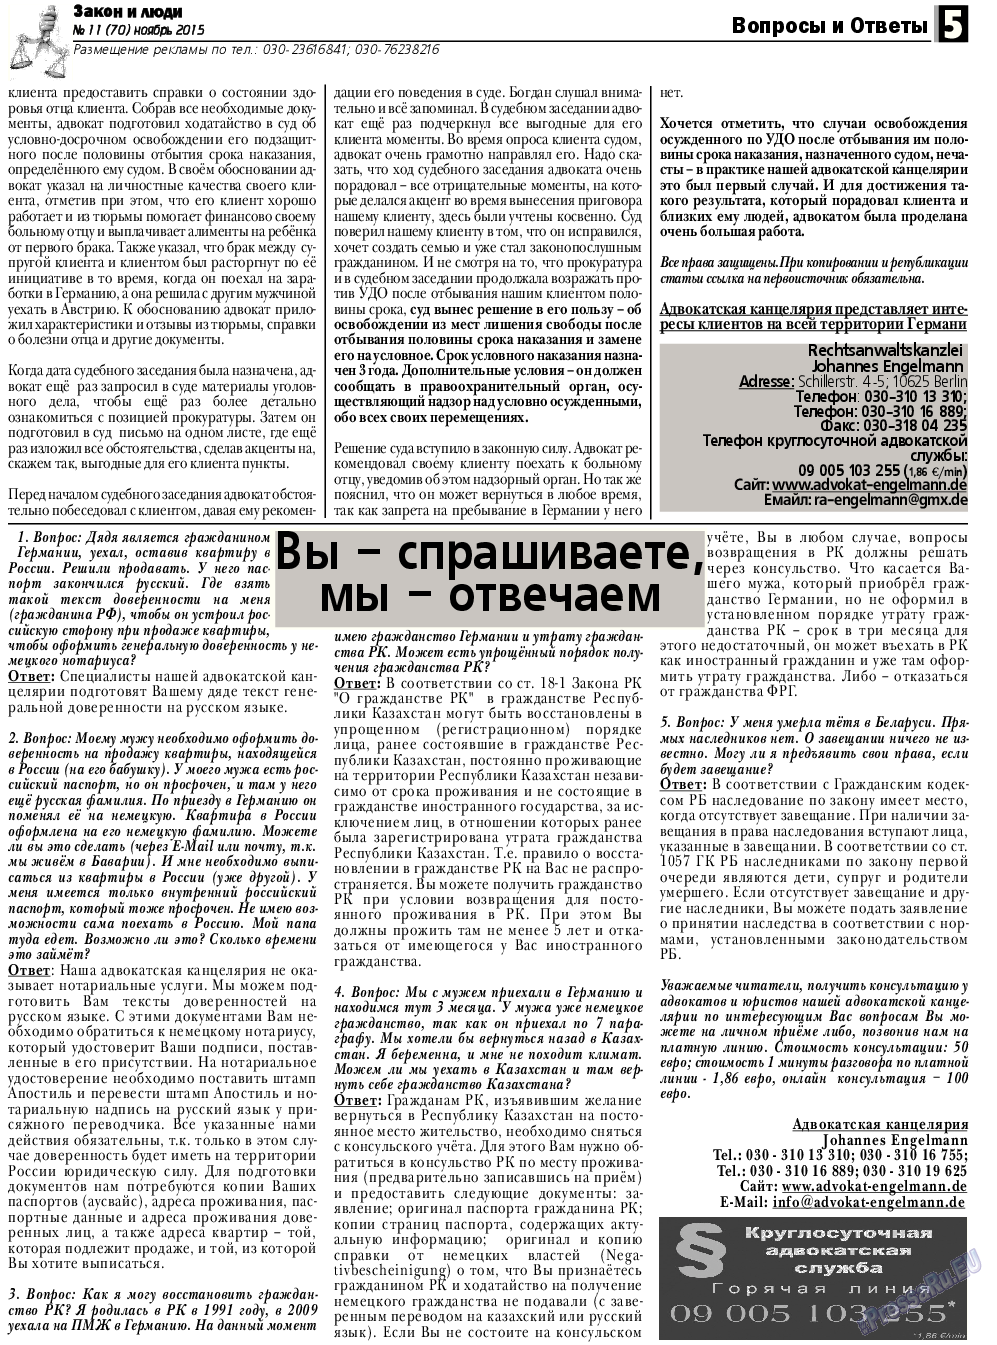 Закон и люди, газета. 2015 №11 стр.5